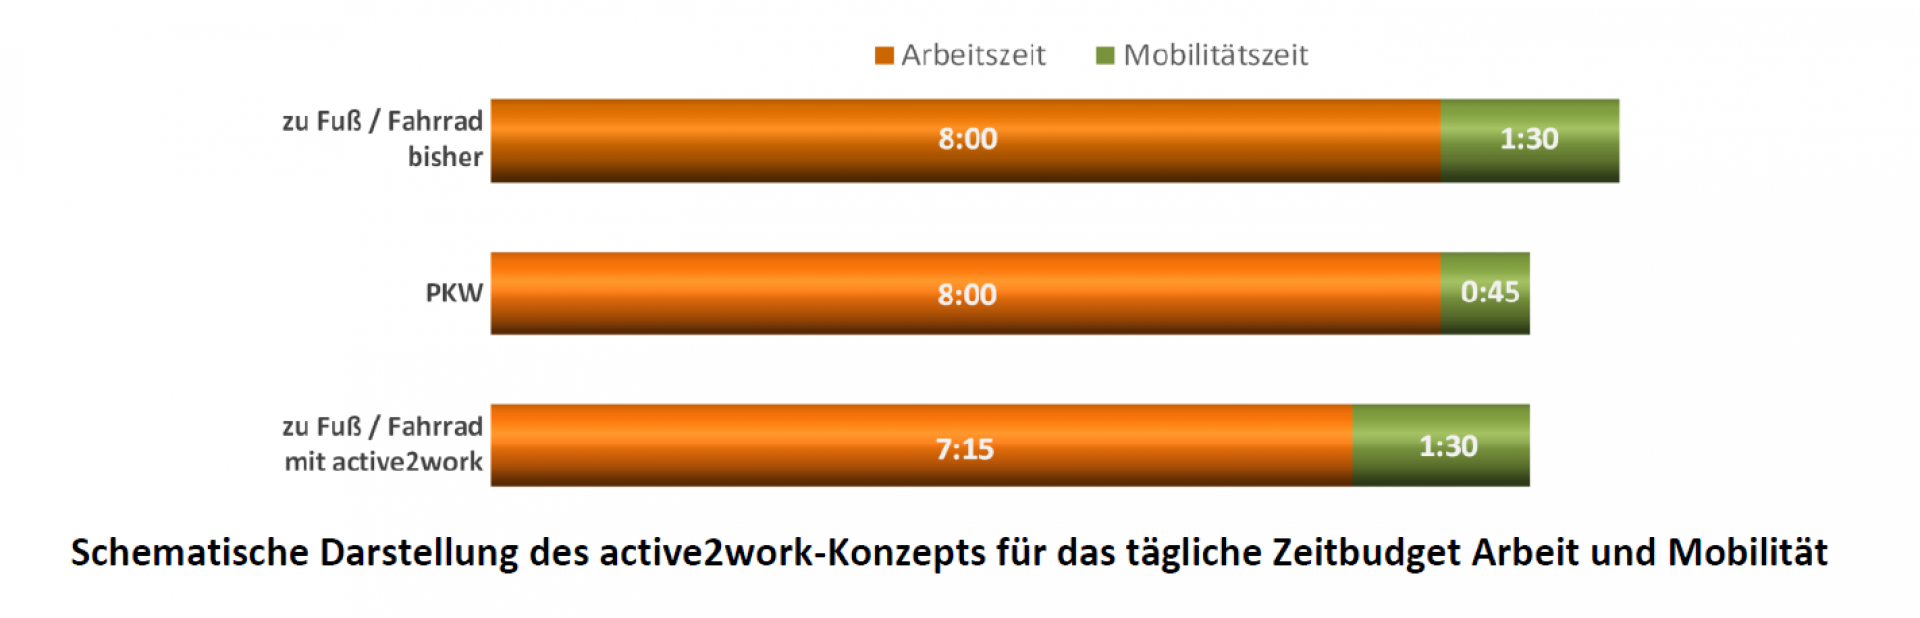 active2work - Arbeits- und Mobilitätszeit neu gedacht